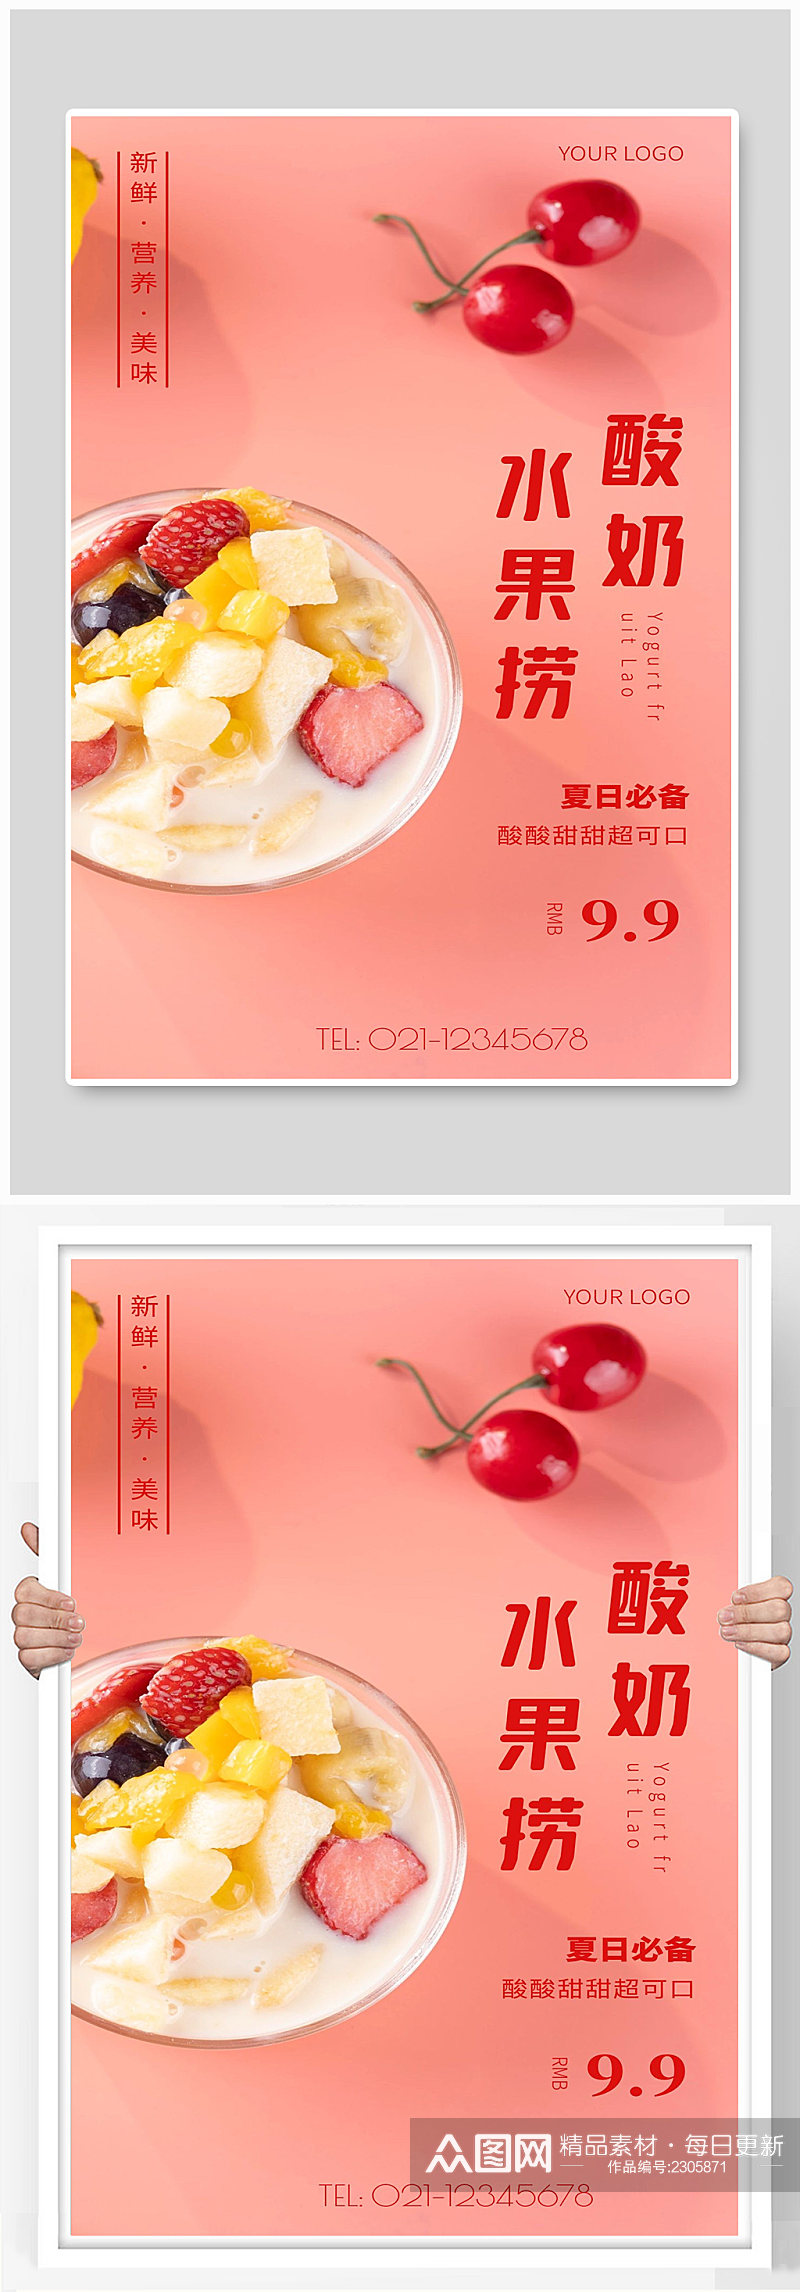 酸奶水果捞宣传海报设计素材